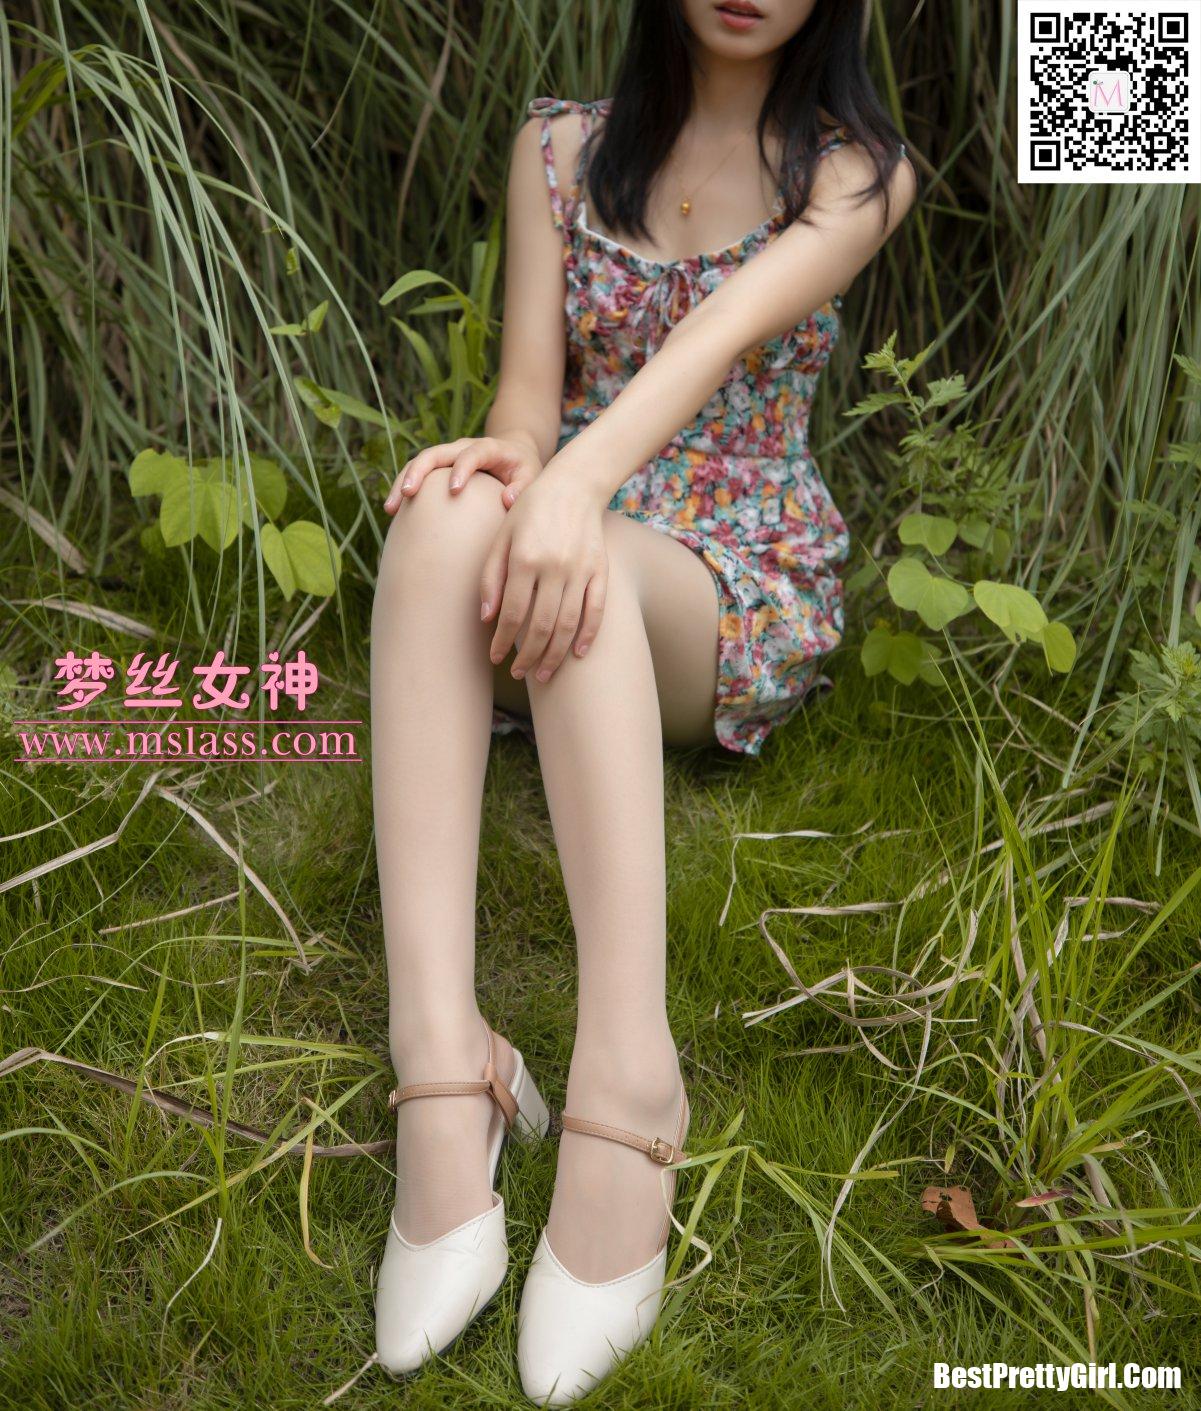 MSLASS梦丝女神 NO.127 Xiao Zhi Ling 21